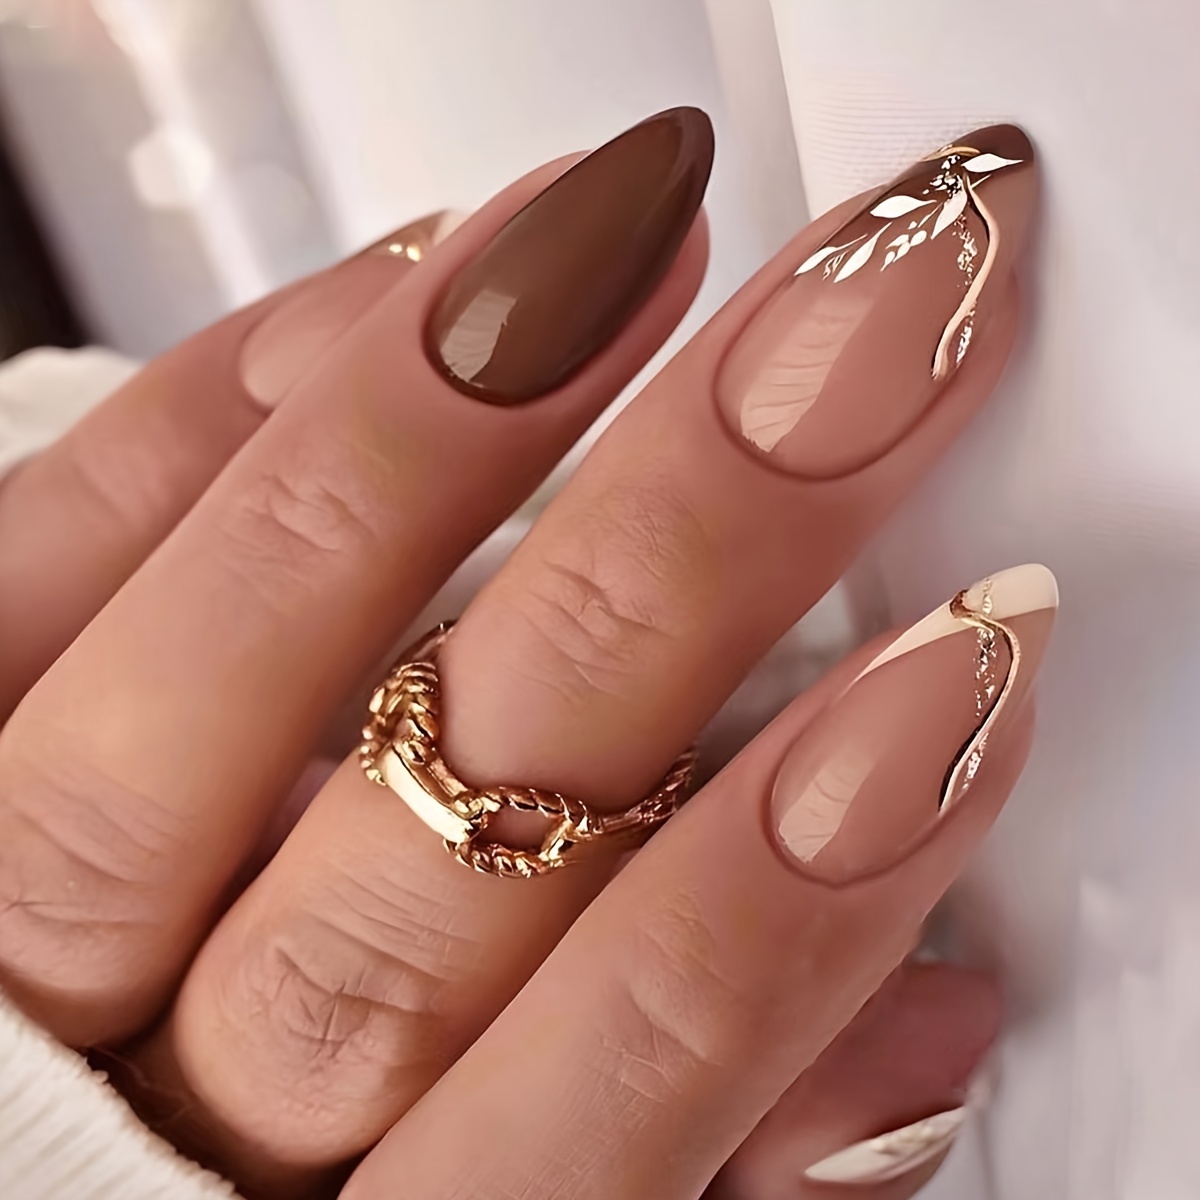 Ring Nails - Temu